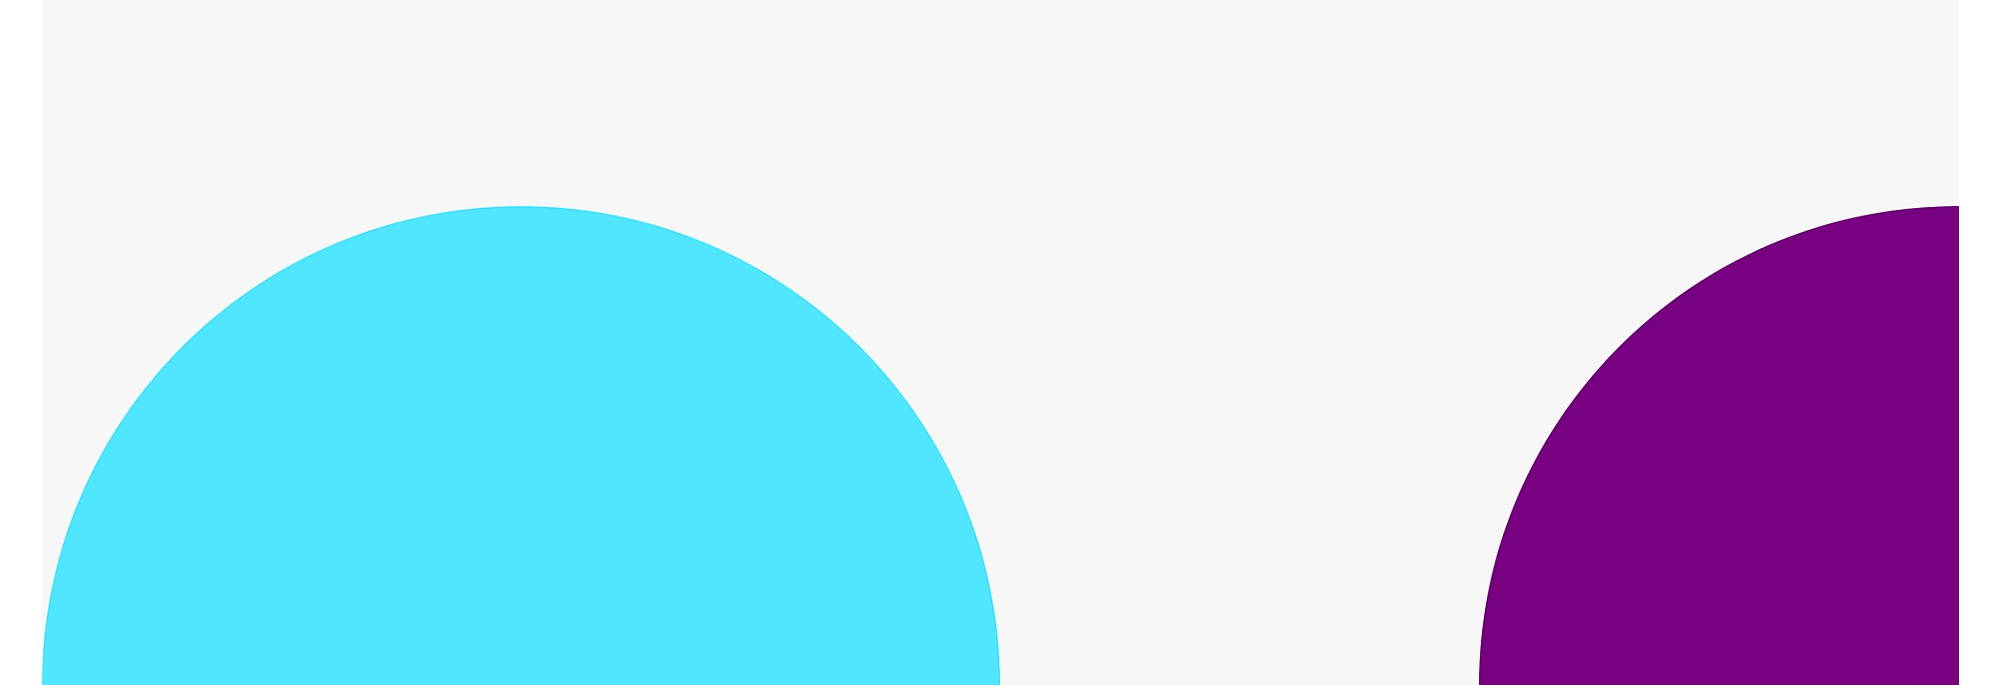 左側に青い円、右側に紫色の円がある、部分的に重なり合った 2 つの大きな円 